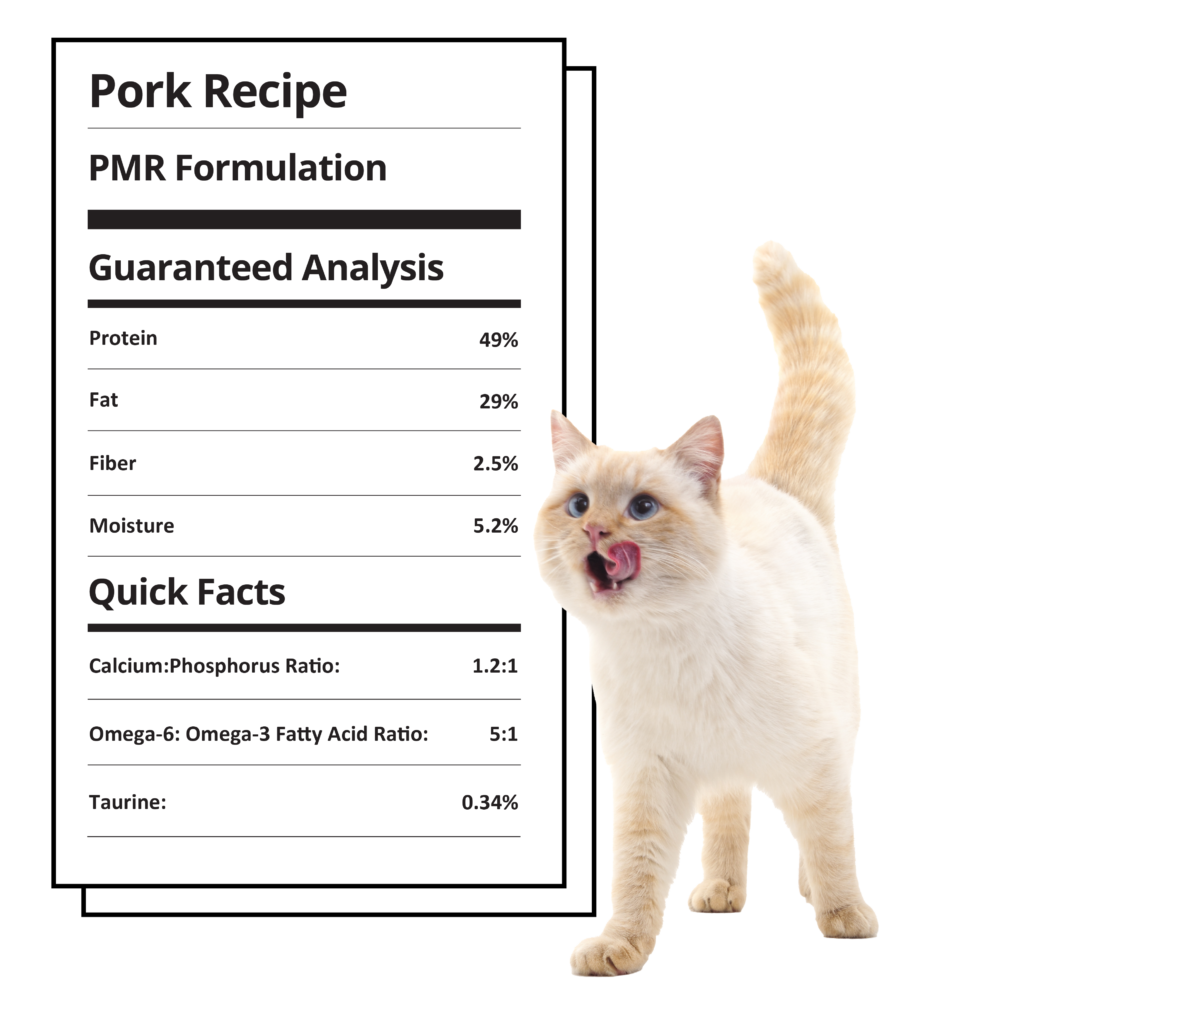 Pork recipe PMR formulation nutritional label